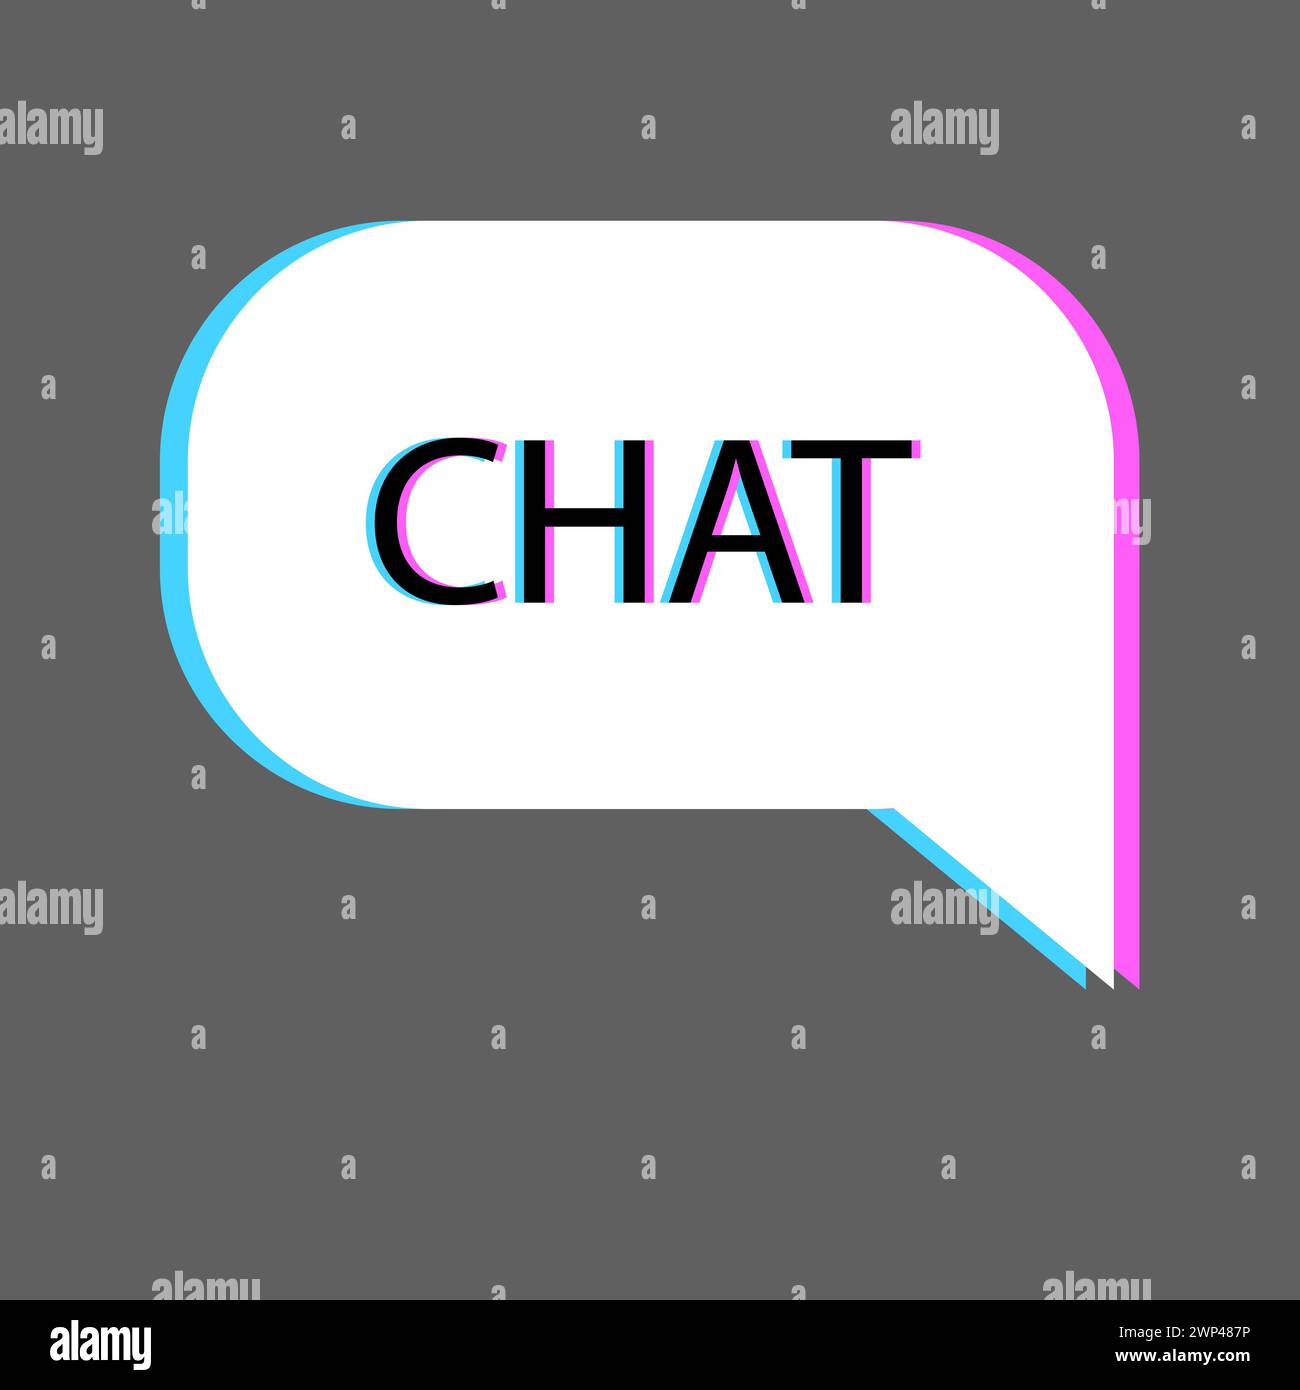 Problemi di chat con le bolle. Citazione della bolla del discorso. Illustrazione vettoriale. Immagine stock. EPS 10. Illustrazione Vettoriale